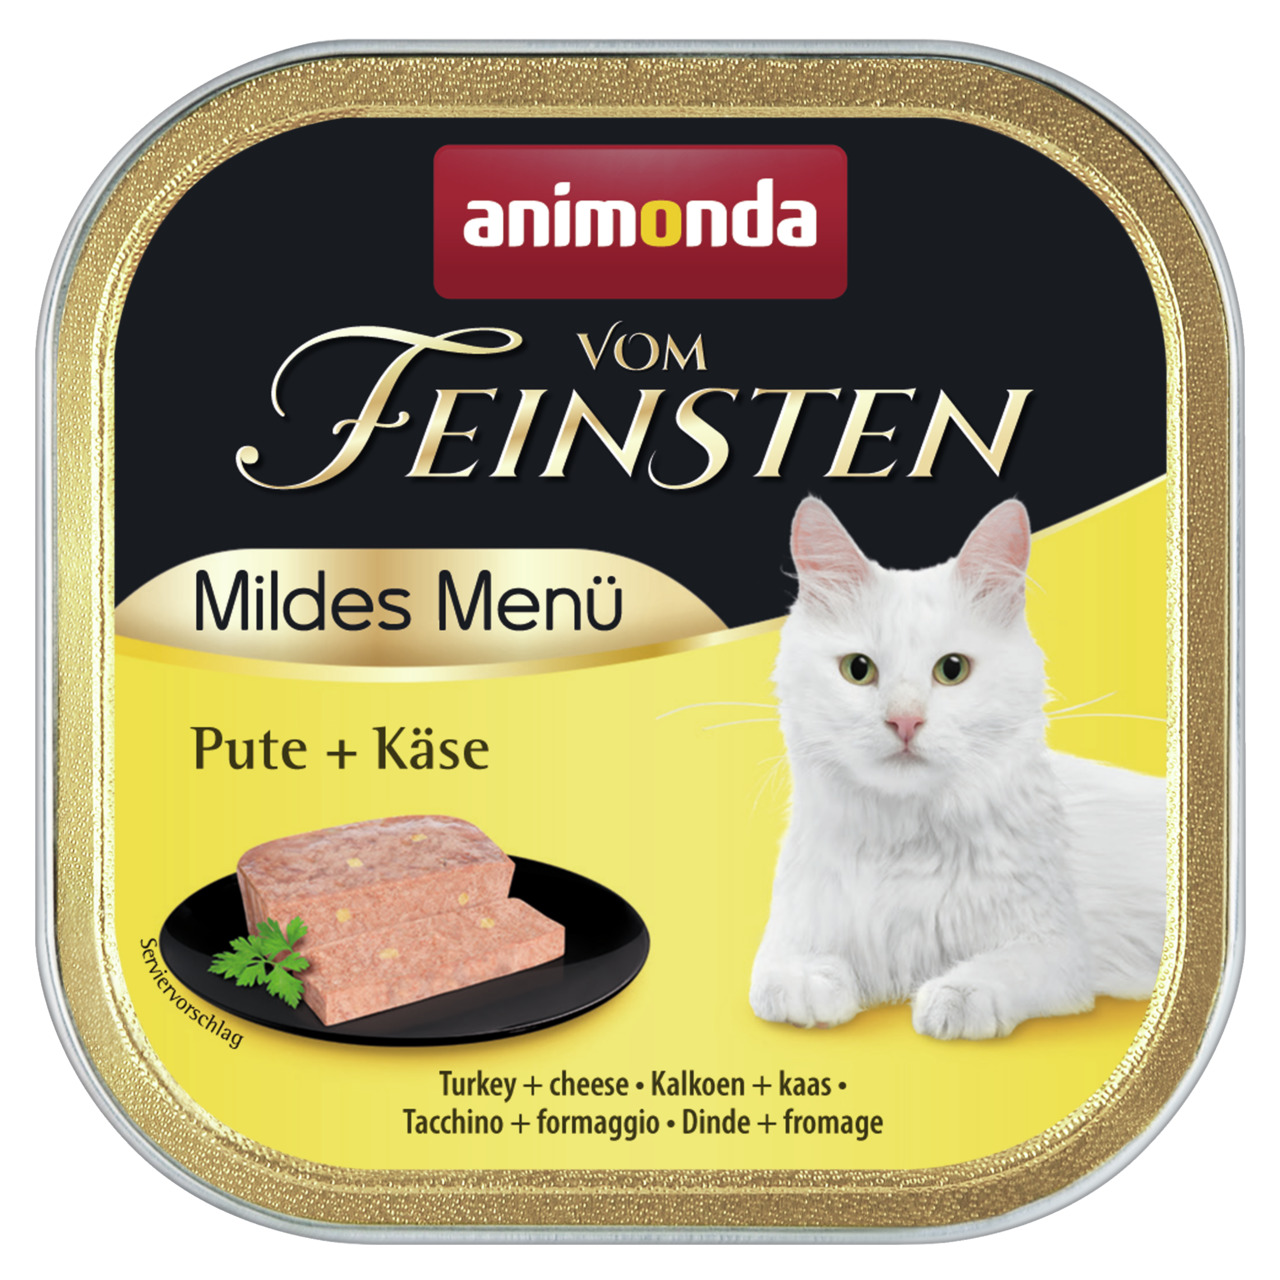 Animonda vom Feinsten Mildes Menü Pute + Käse Katzen Nassfutter 100 g